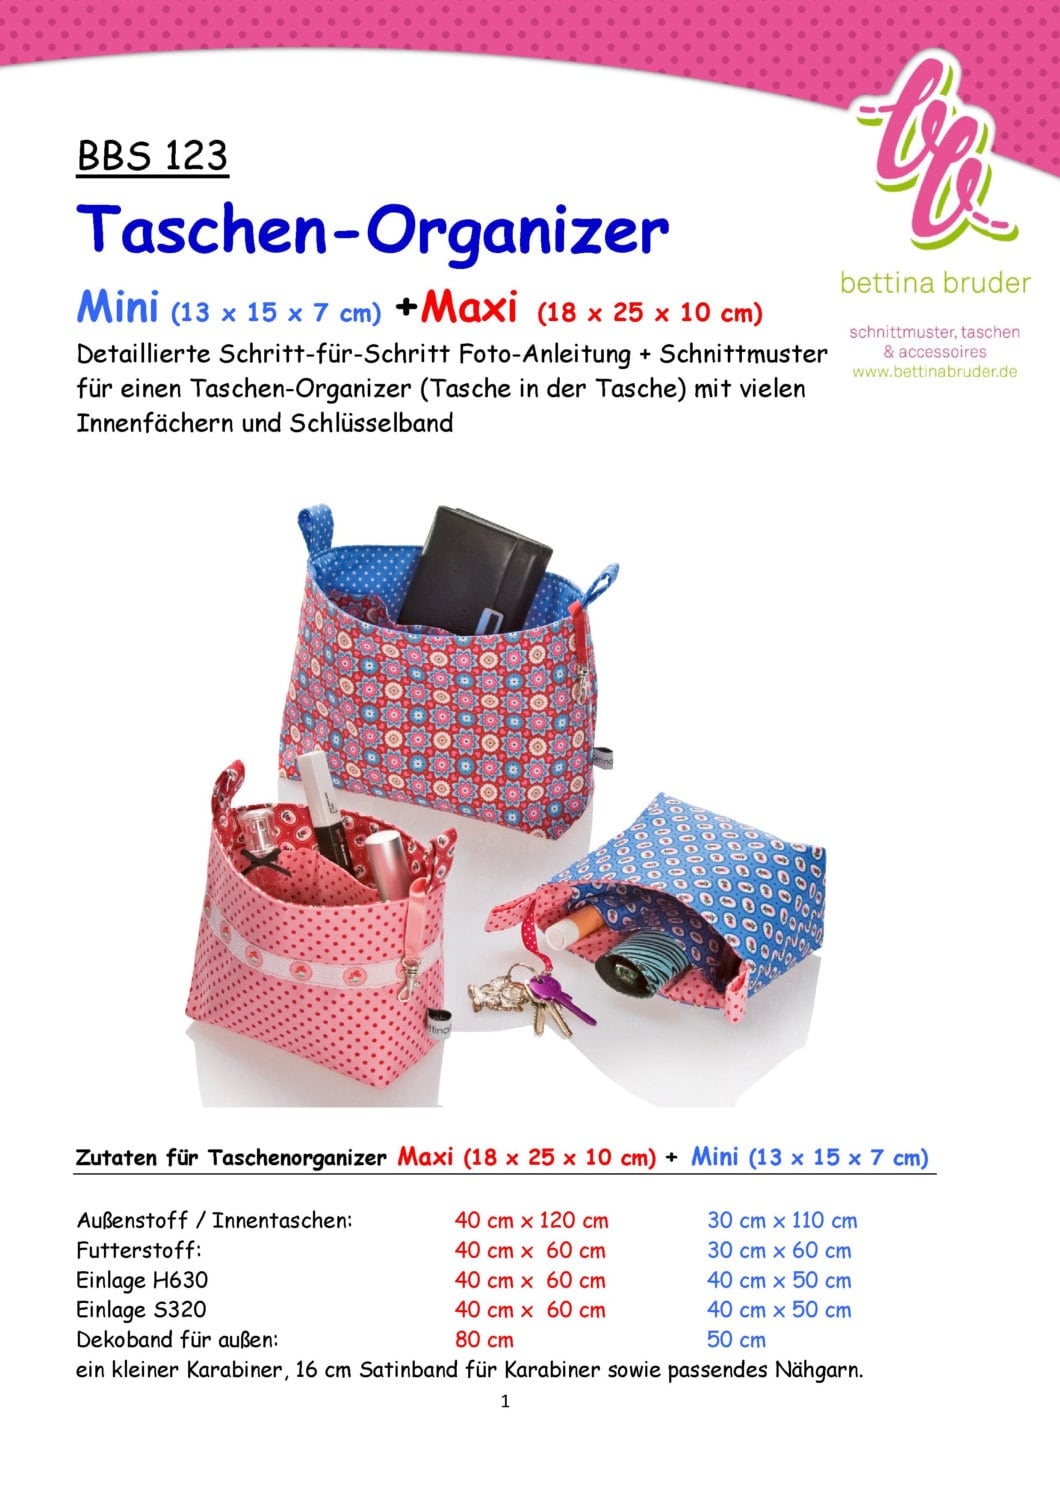 BBS 123 Taschen-organizer Schnittmuster/fotoanleitung 